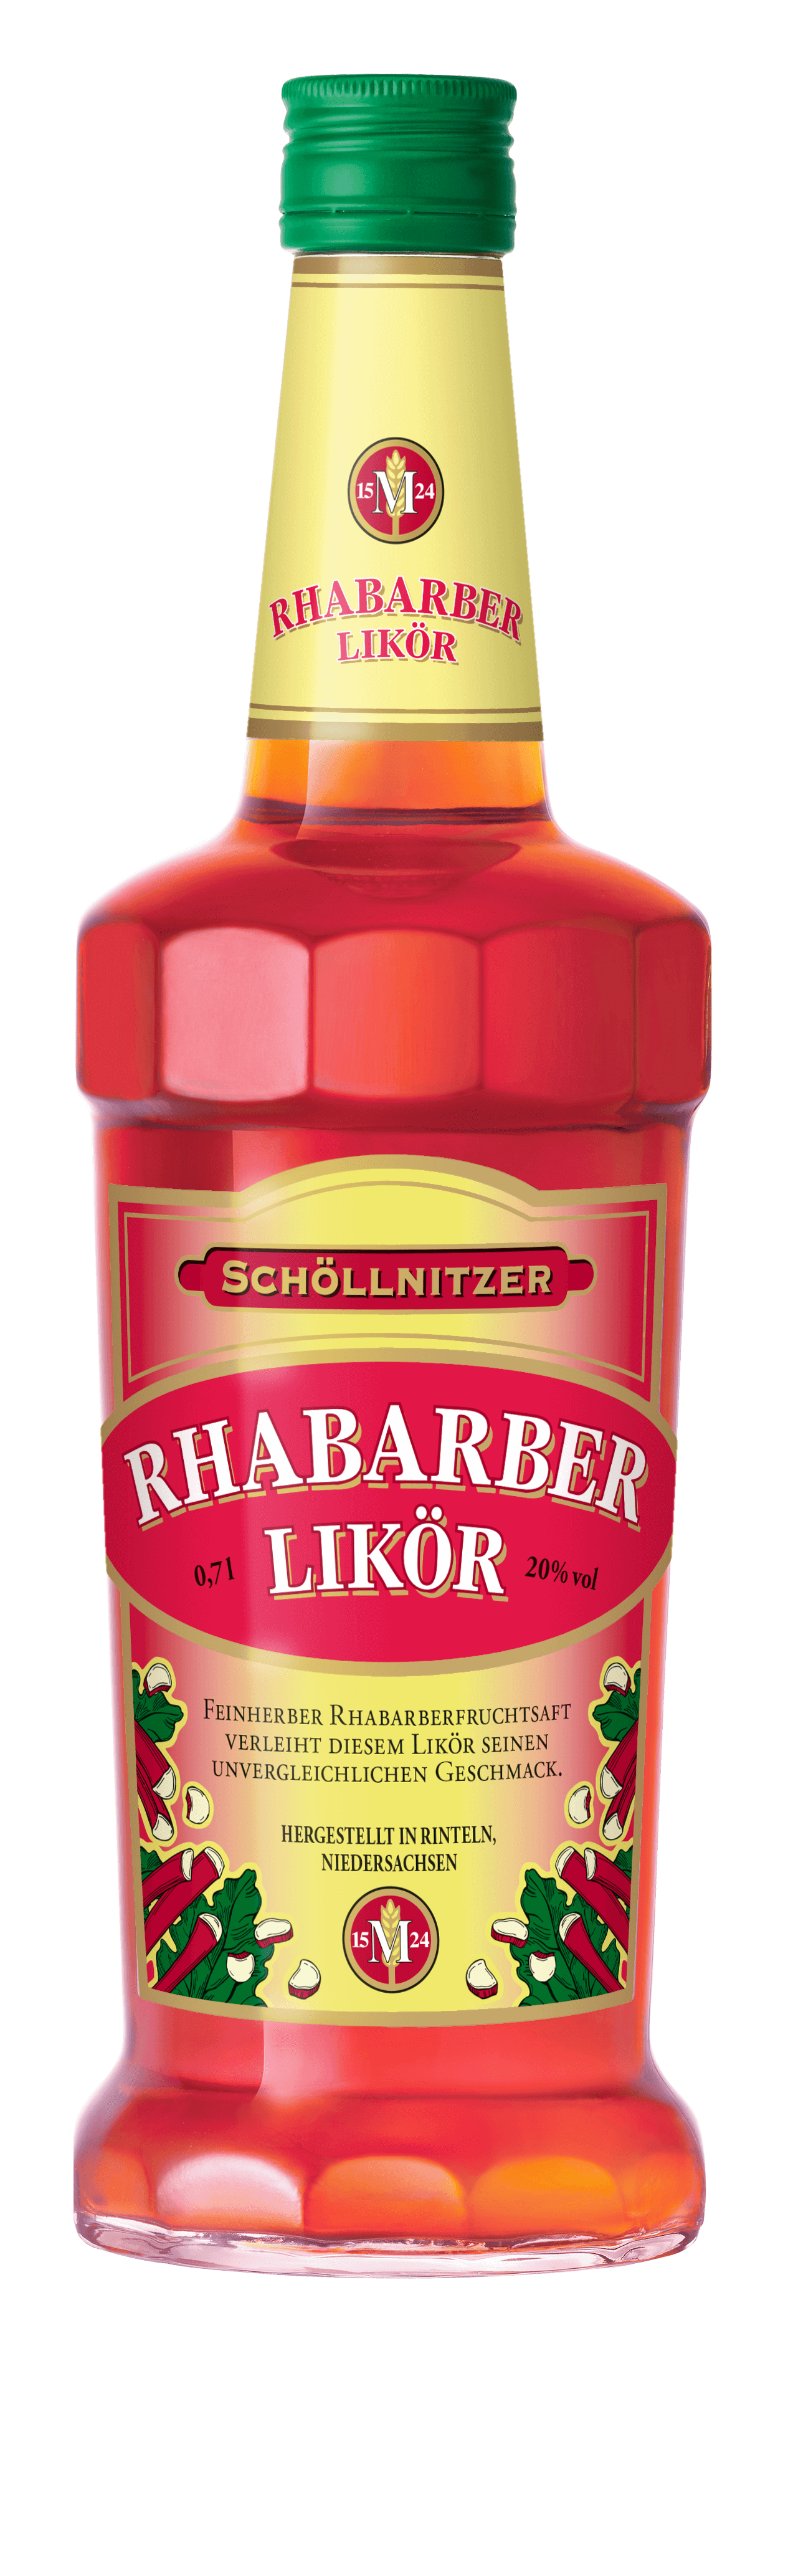 Schöllnitzer Rhabarber Likör 20% 0,7L